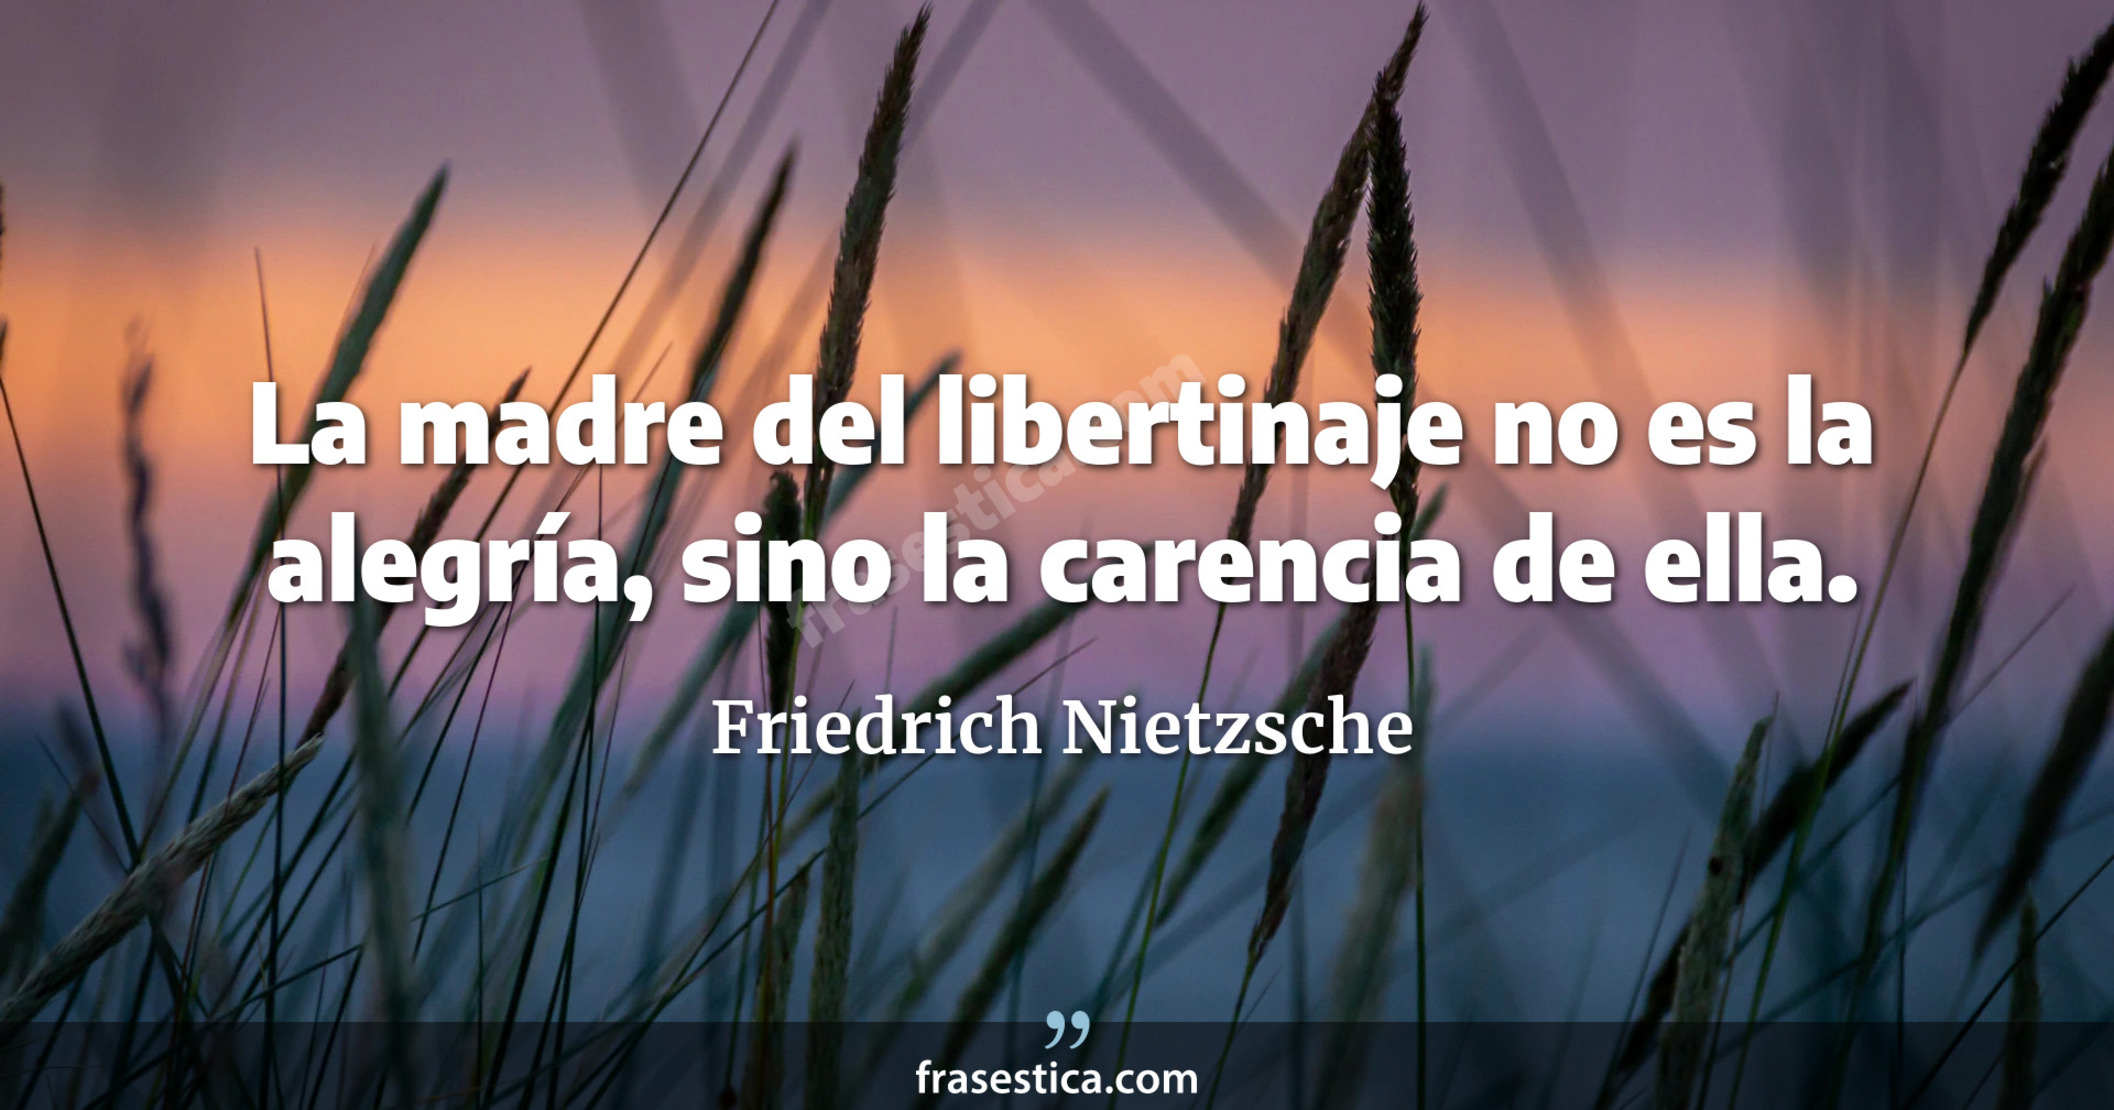 La madre del libertinaje no es la alegría, sino la carencia de ella. - Friedrich Nietzsche